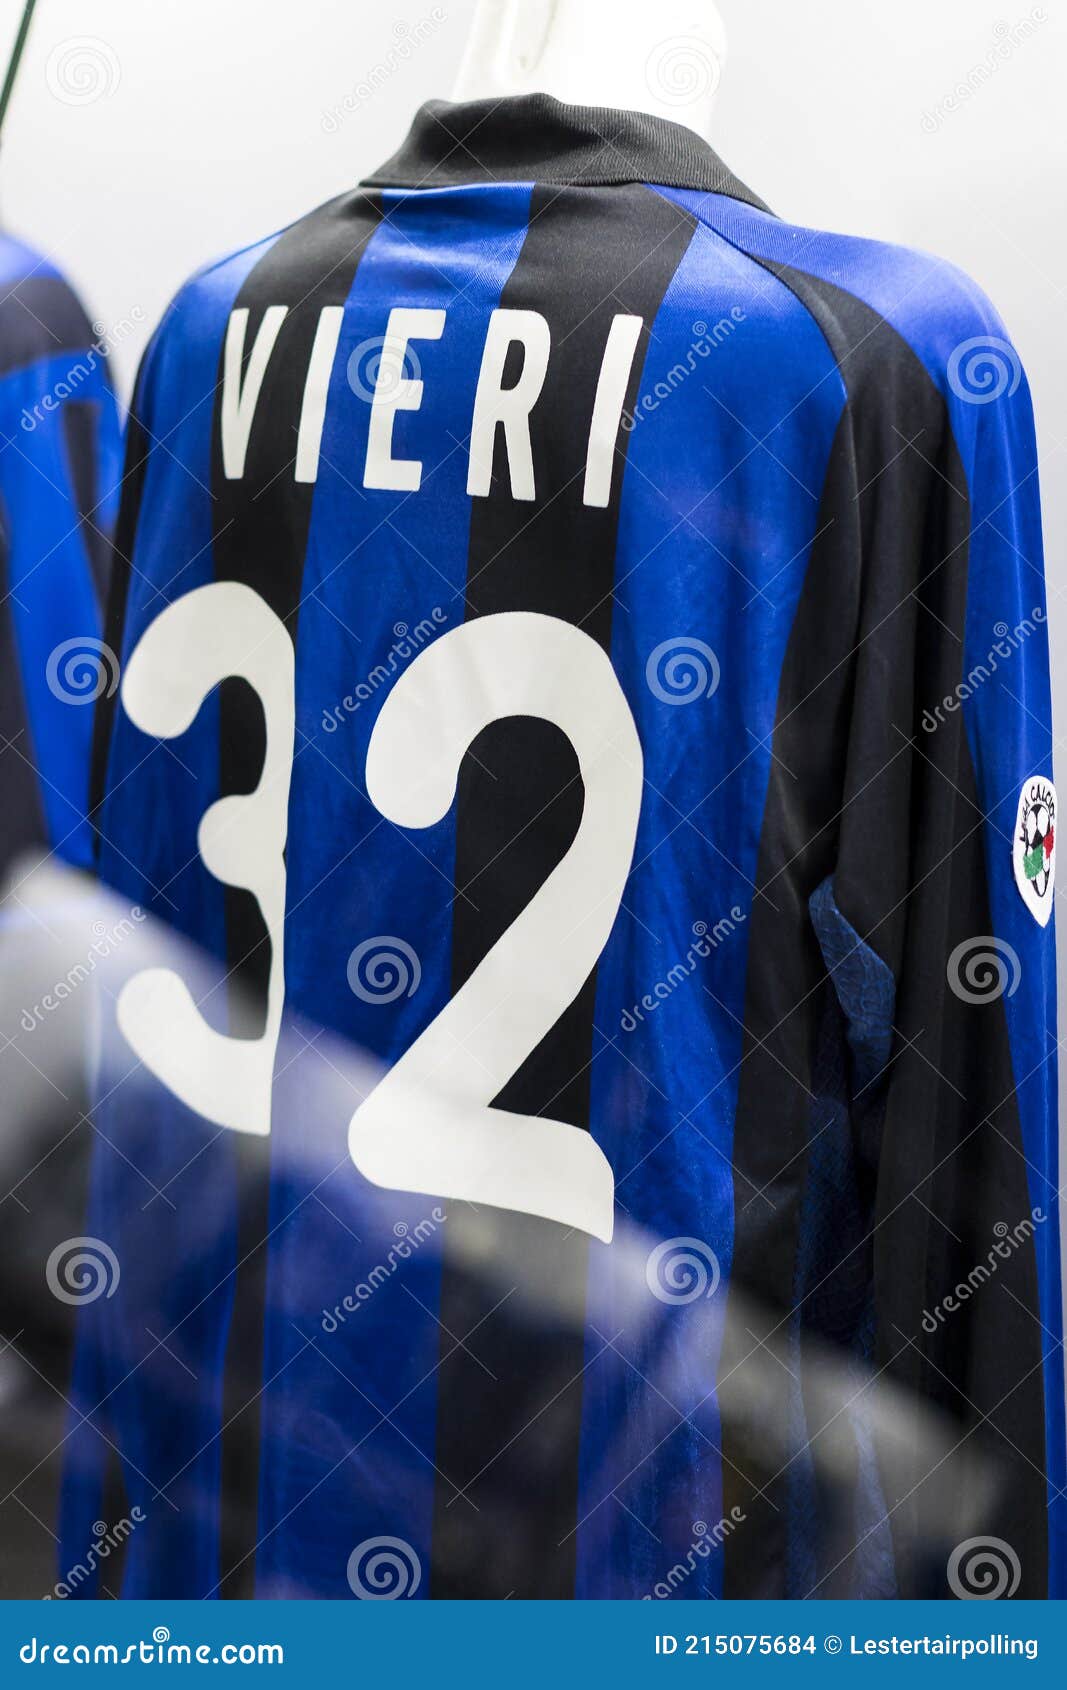 Inter Milan Vieri 32 Shirt 